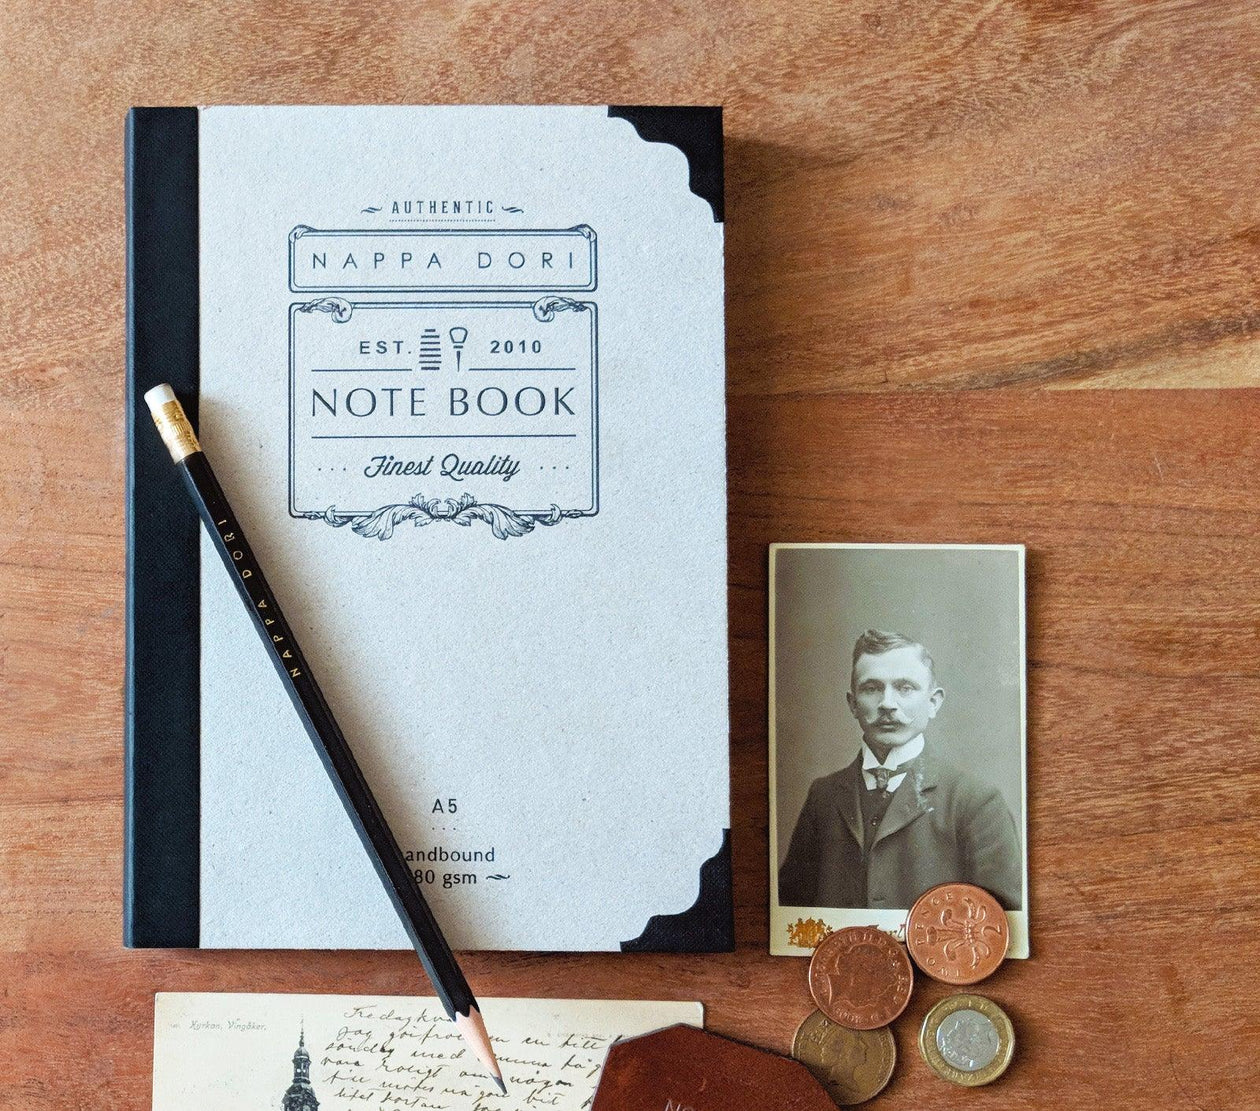 Nappa Dori Classic Case Bound Notebook